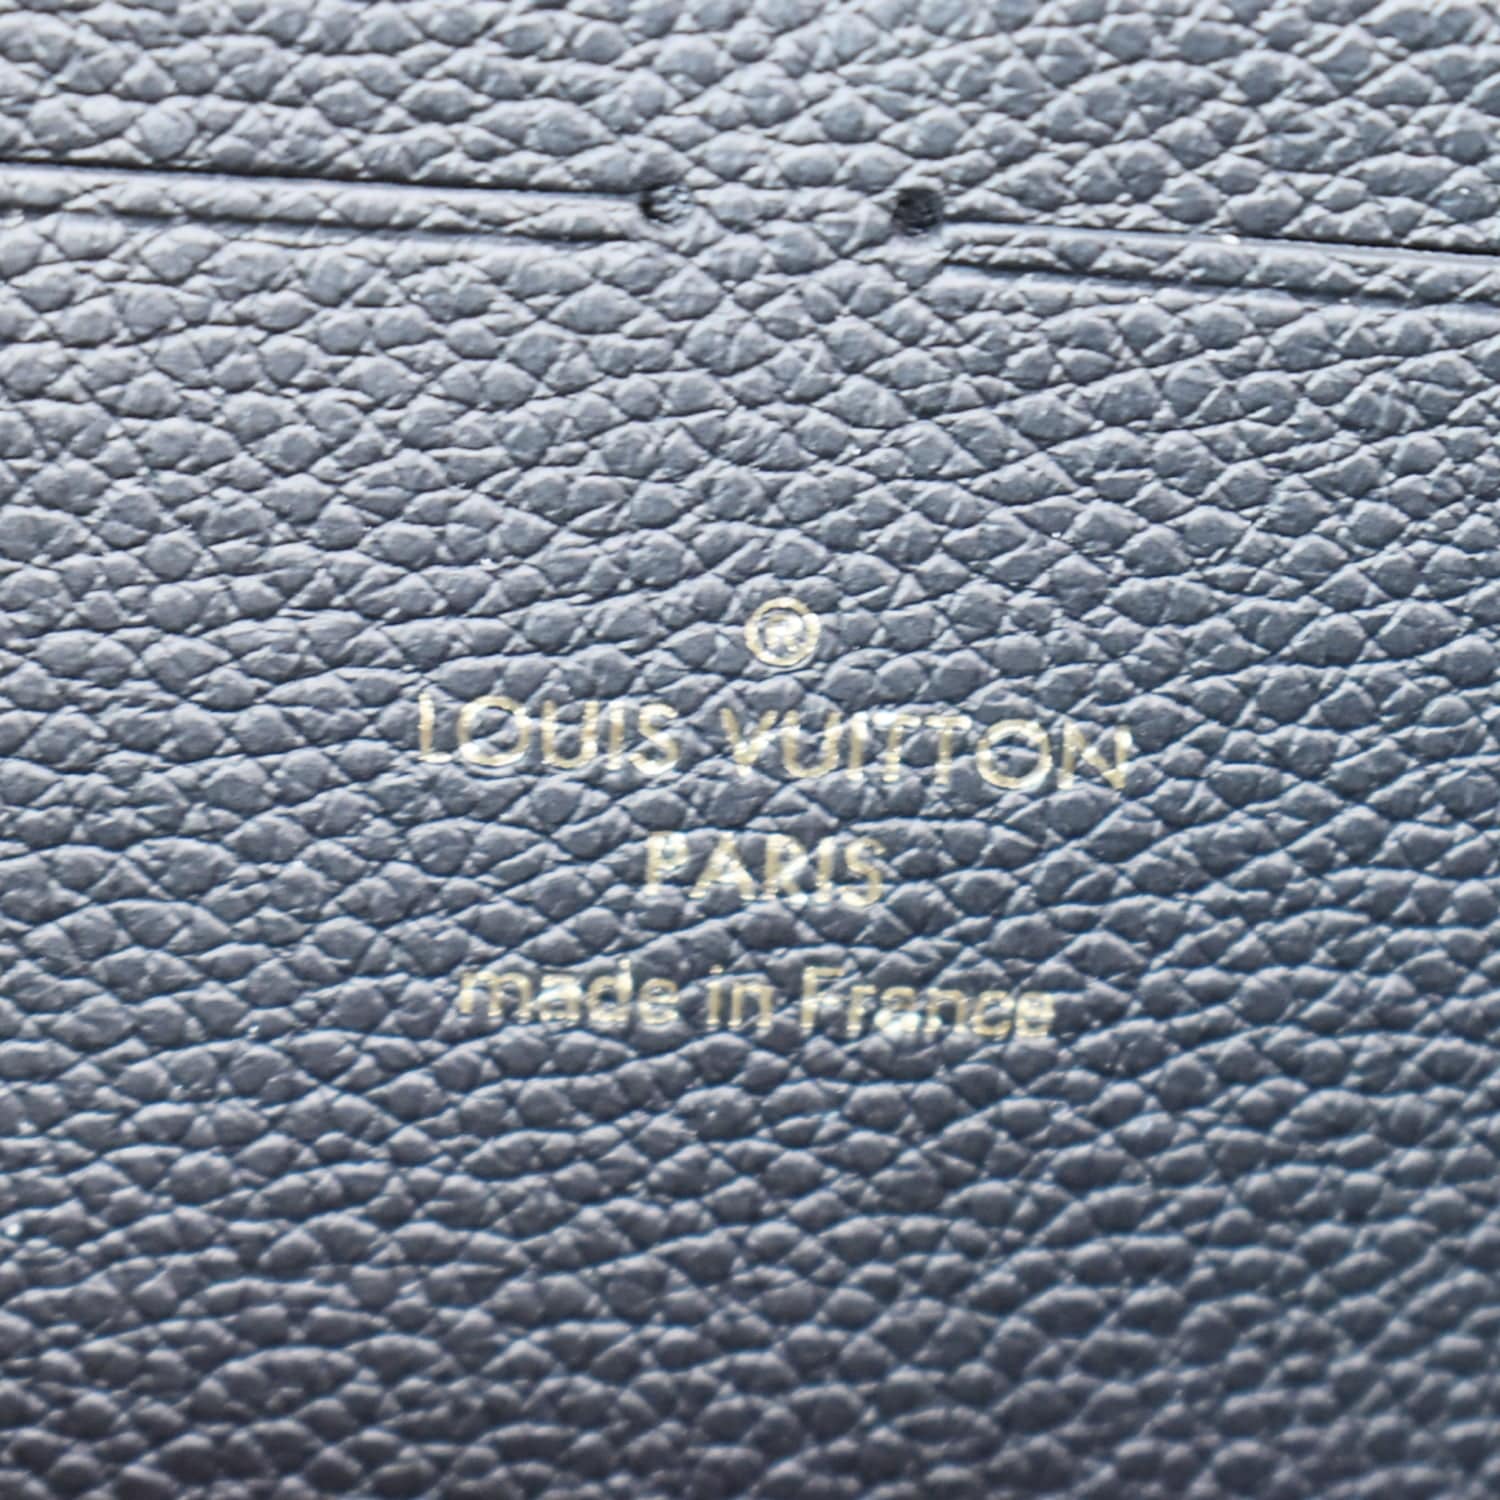 Louis Vuitton Black Monogram Empreinte Leather Clémence Wallet